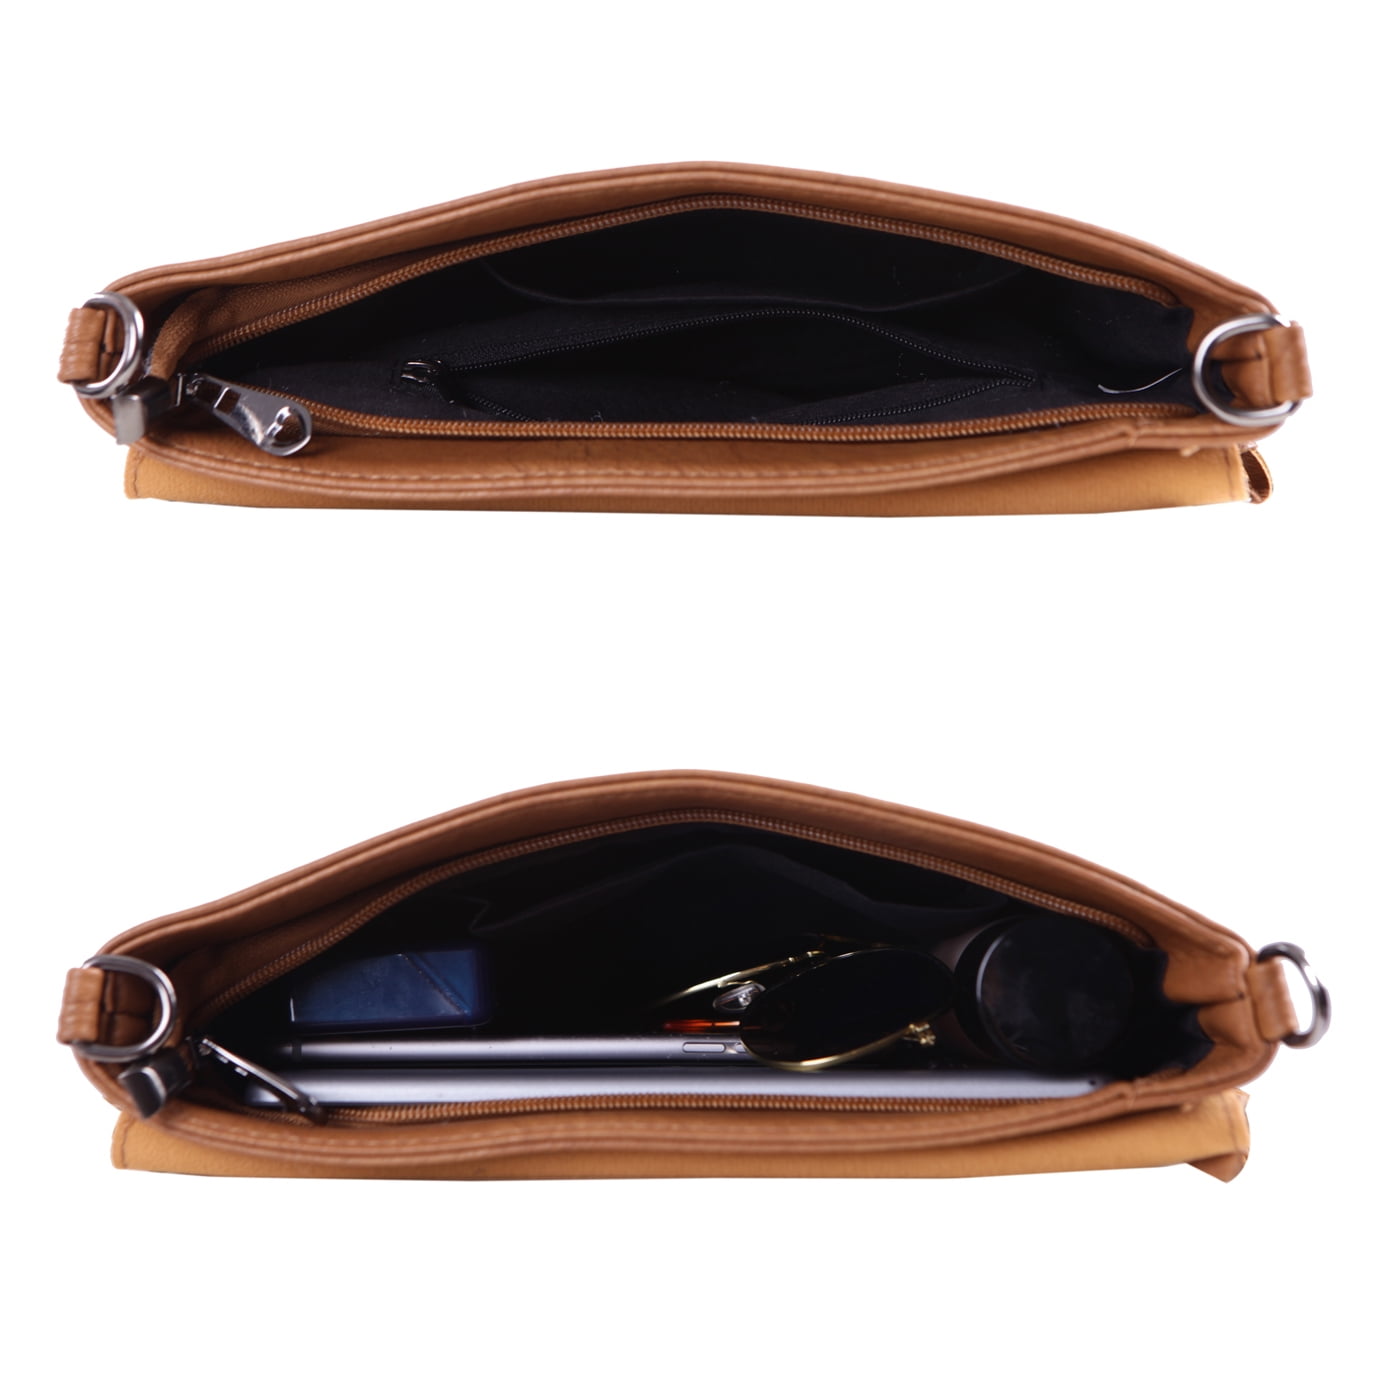 HDE Leather Envelope Fringe Shoulder Bag Tassel Crossbody Handbag